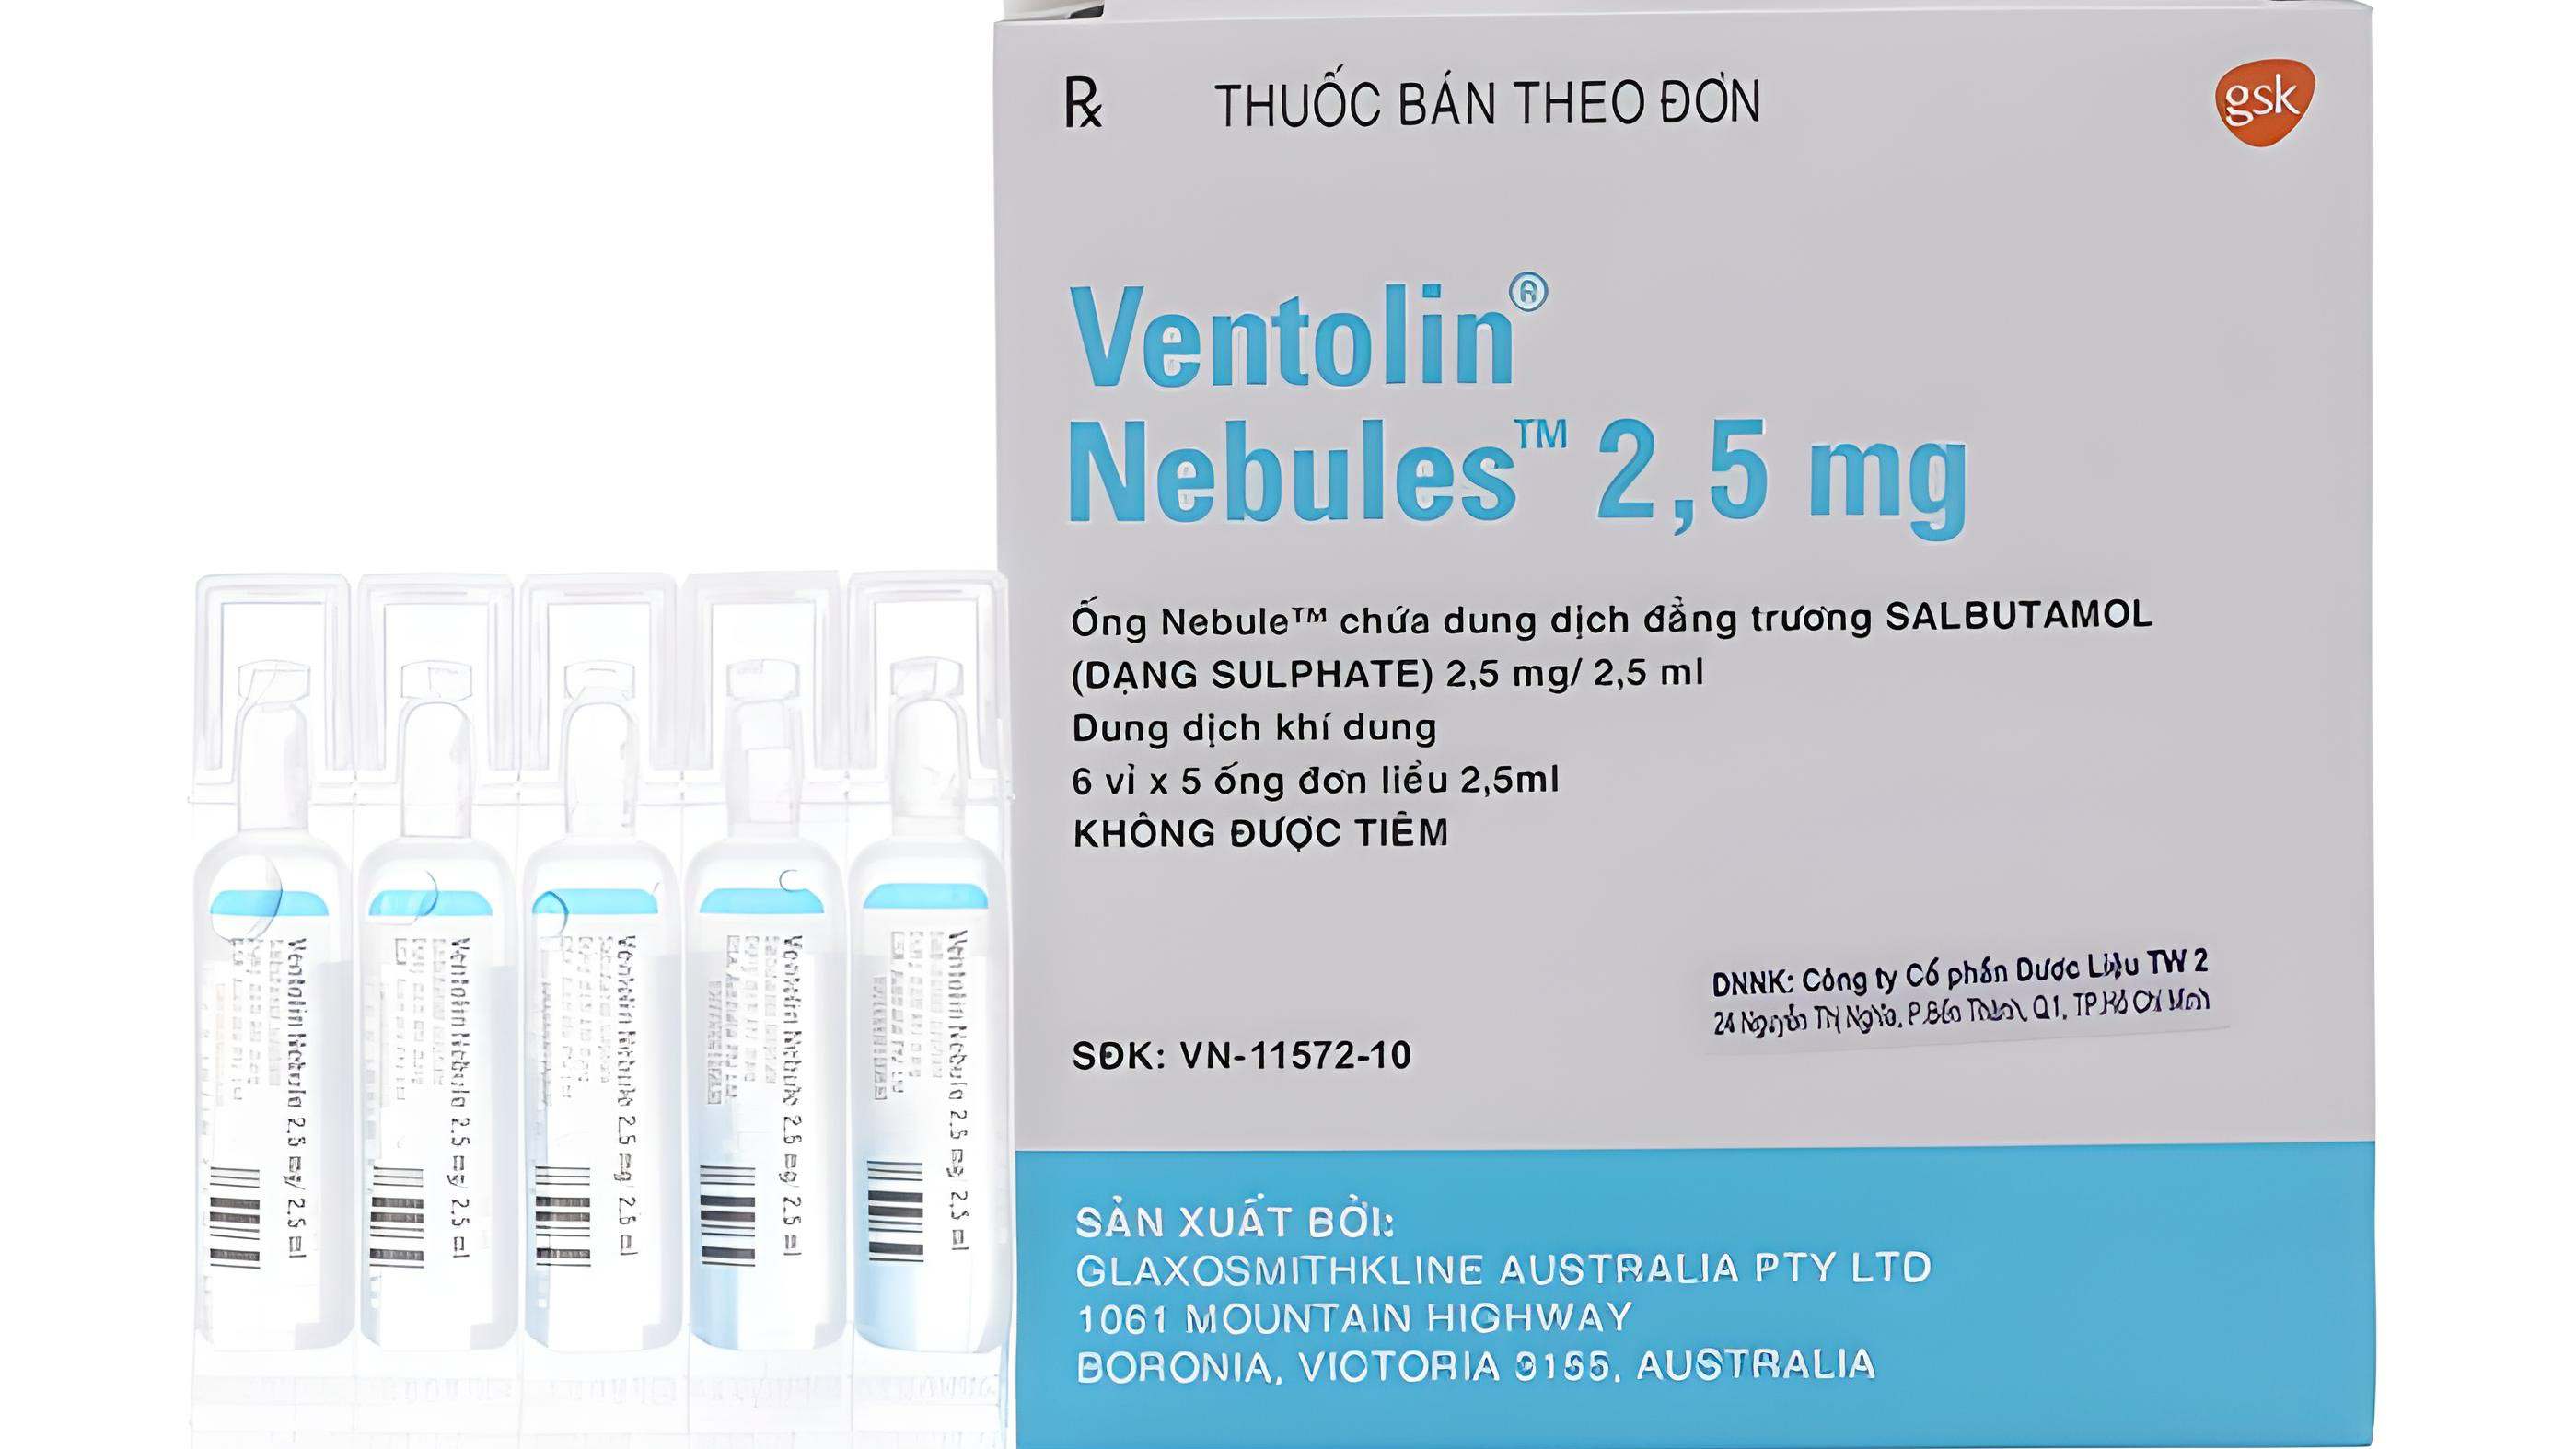 Cách sử dụng thuốc Ventolin nebules như thế nào?
